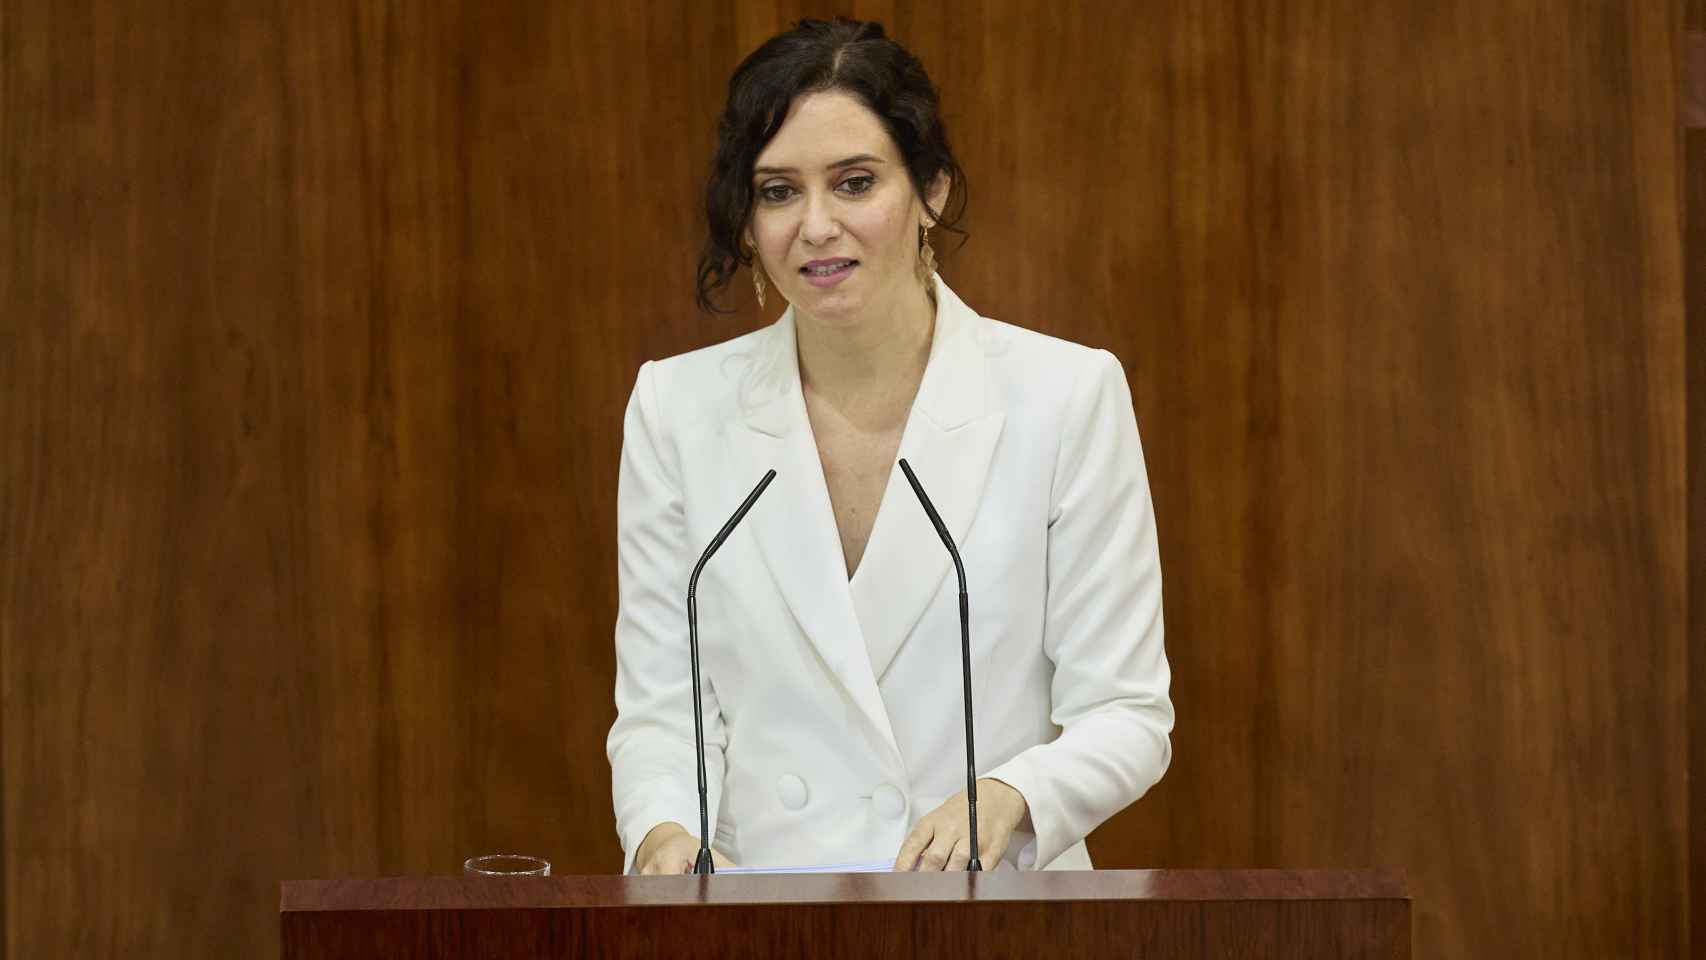 Isabel Díaz Ayuso, anuncia su plan de natalidad durante el pleno de su investidura, el 17 de junio.